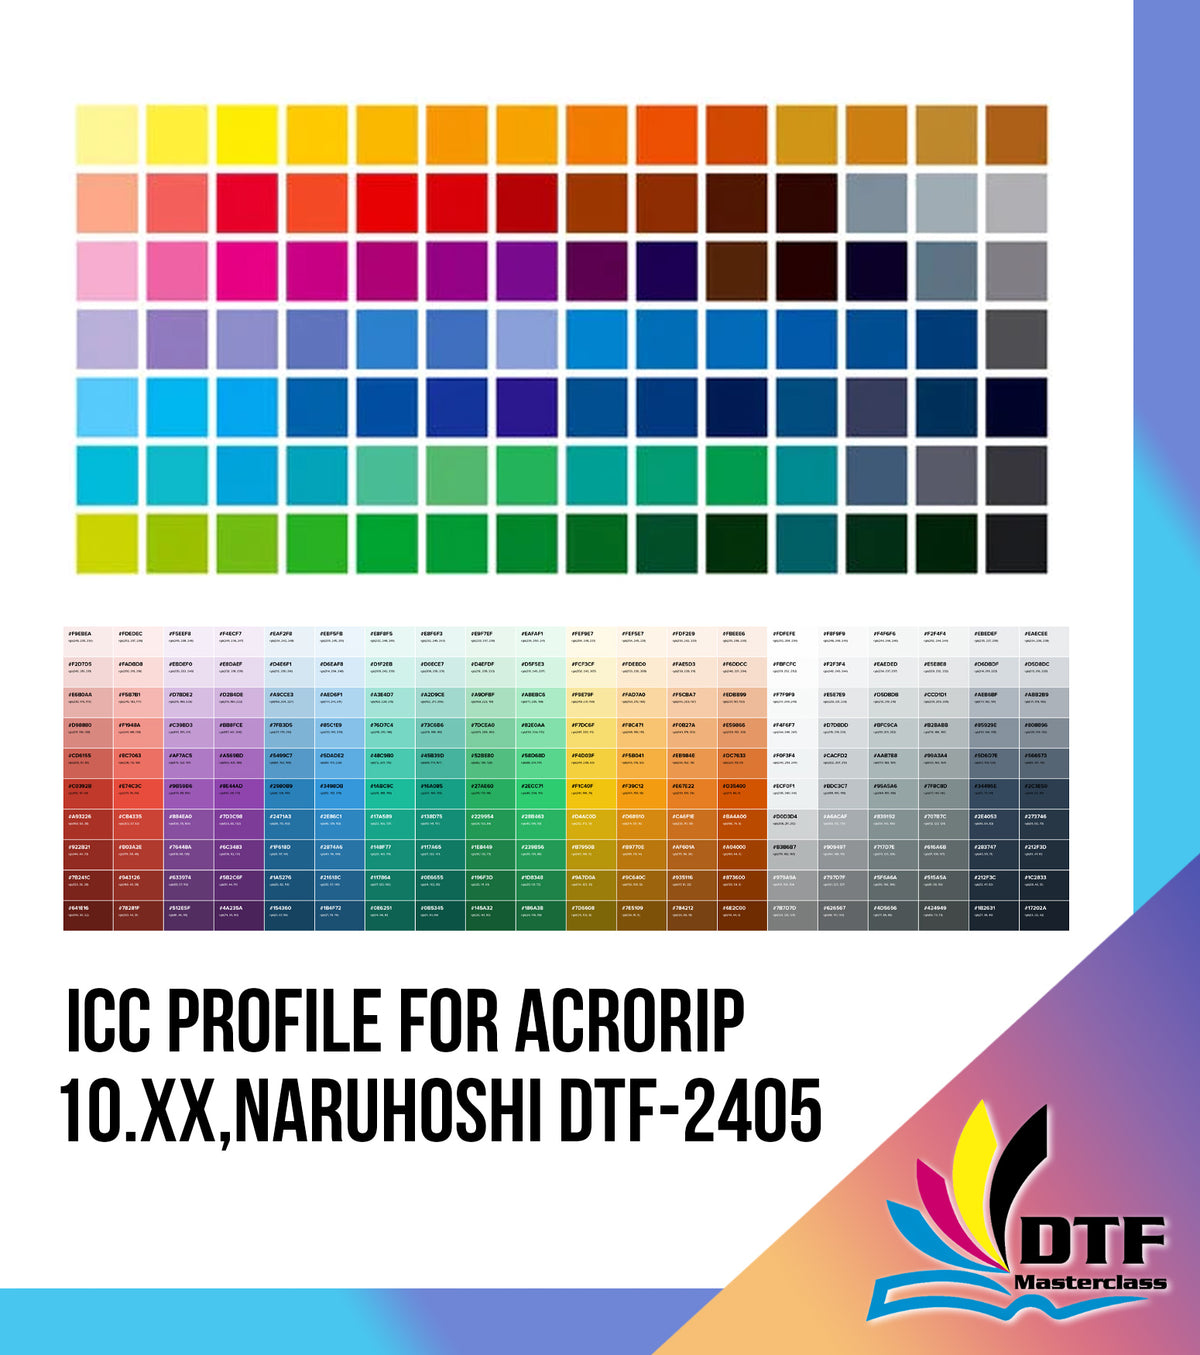 ICC Profile for AcroRIP 10.xx, Naruhoshi DTF-2405